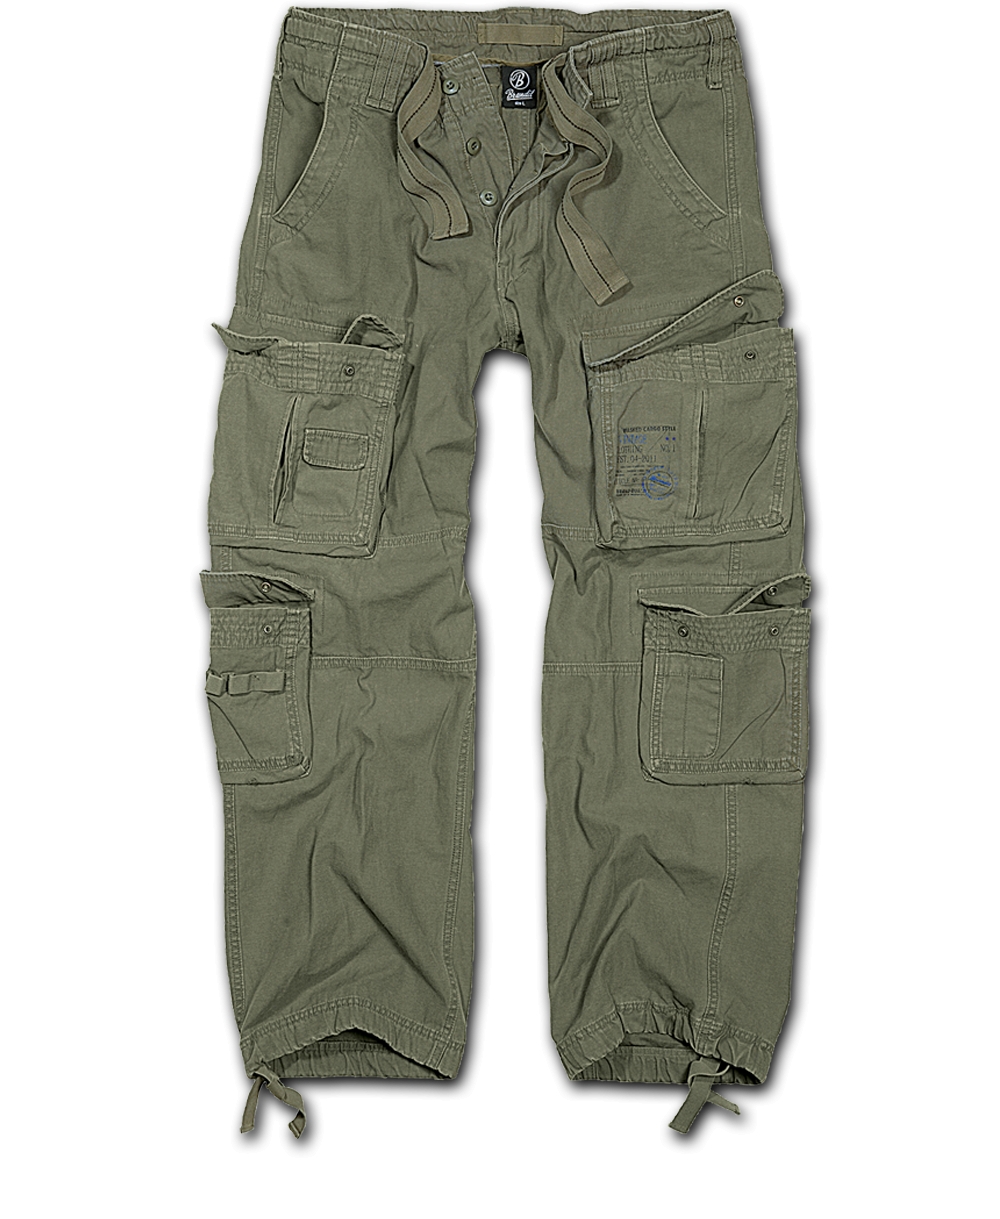 Kalhoty Brandit Pure Vintage - olivové, XL